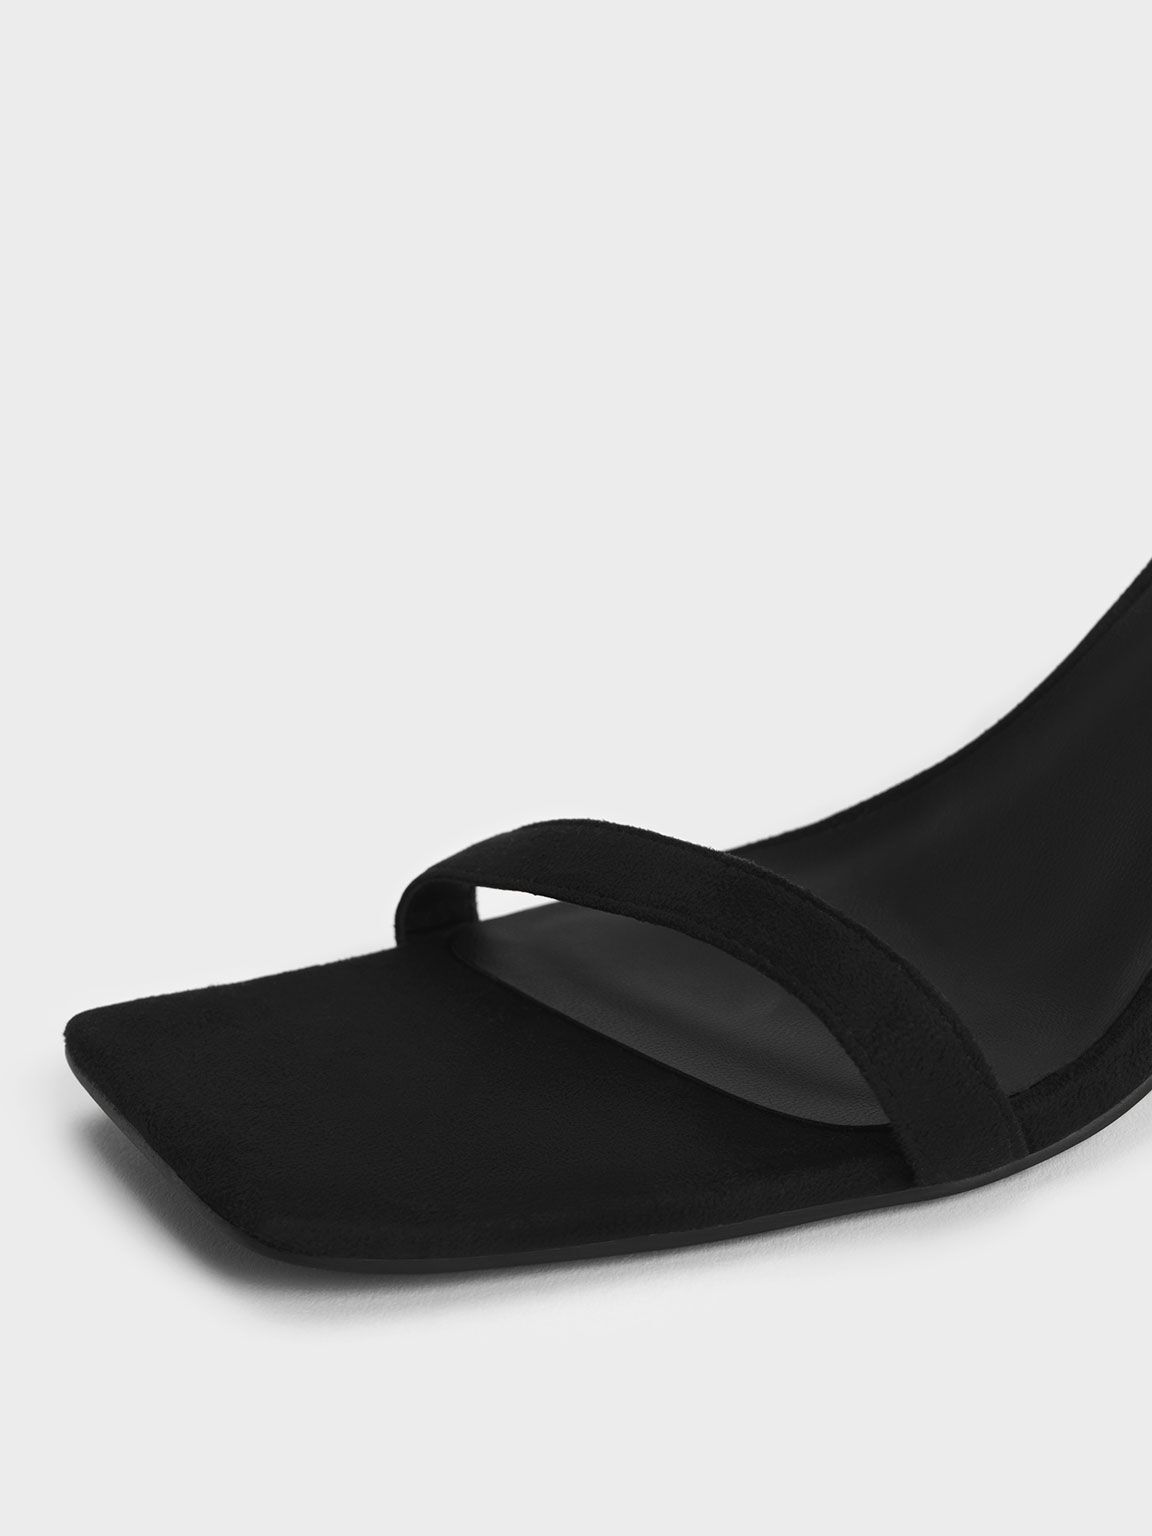 Sandal Heeled Ankle-Strap Textured, Black, hi-res